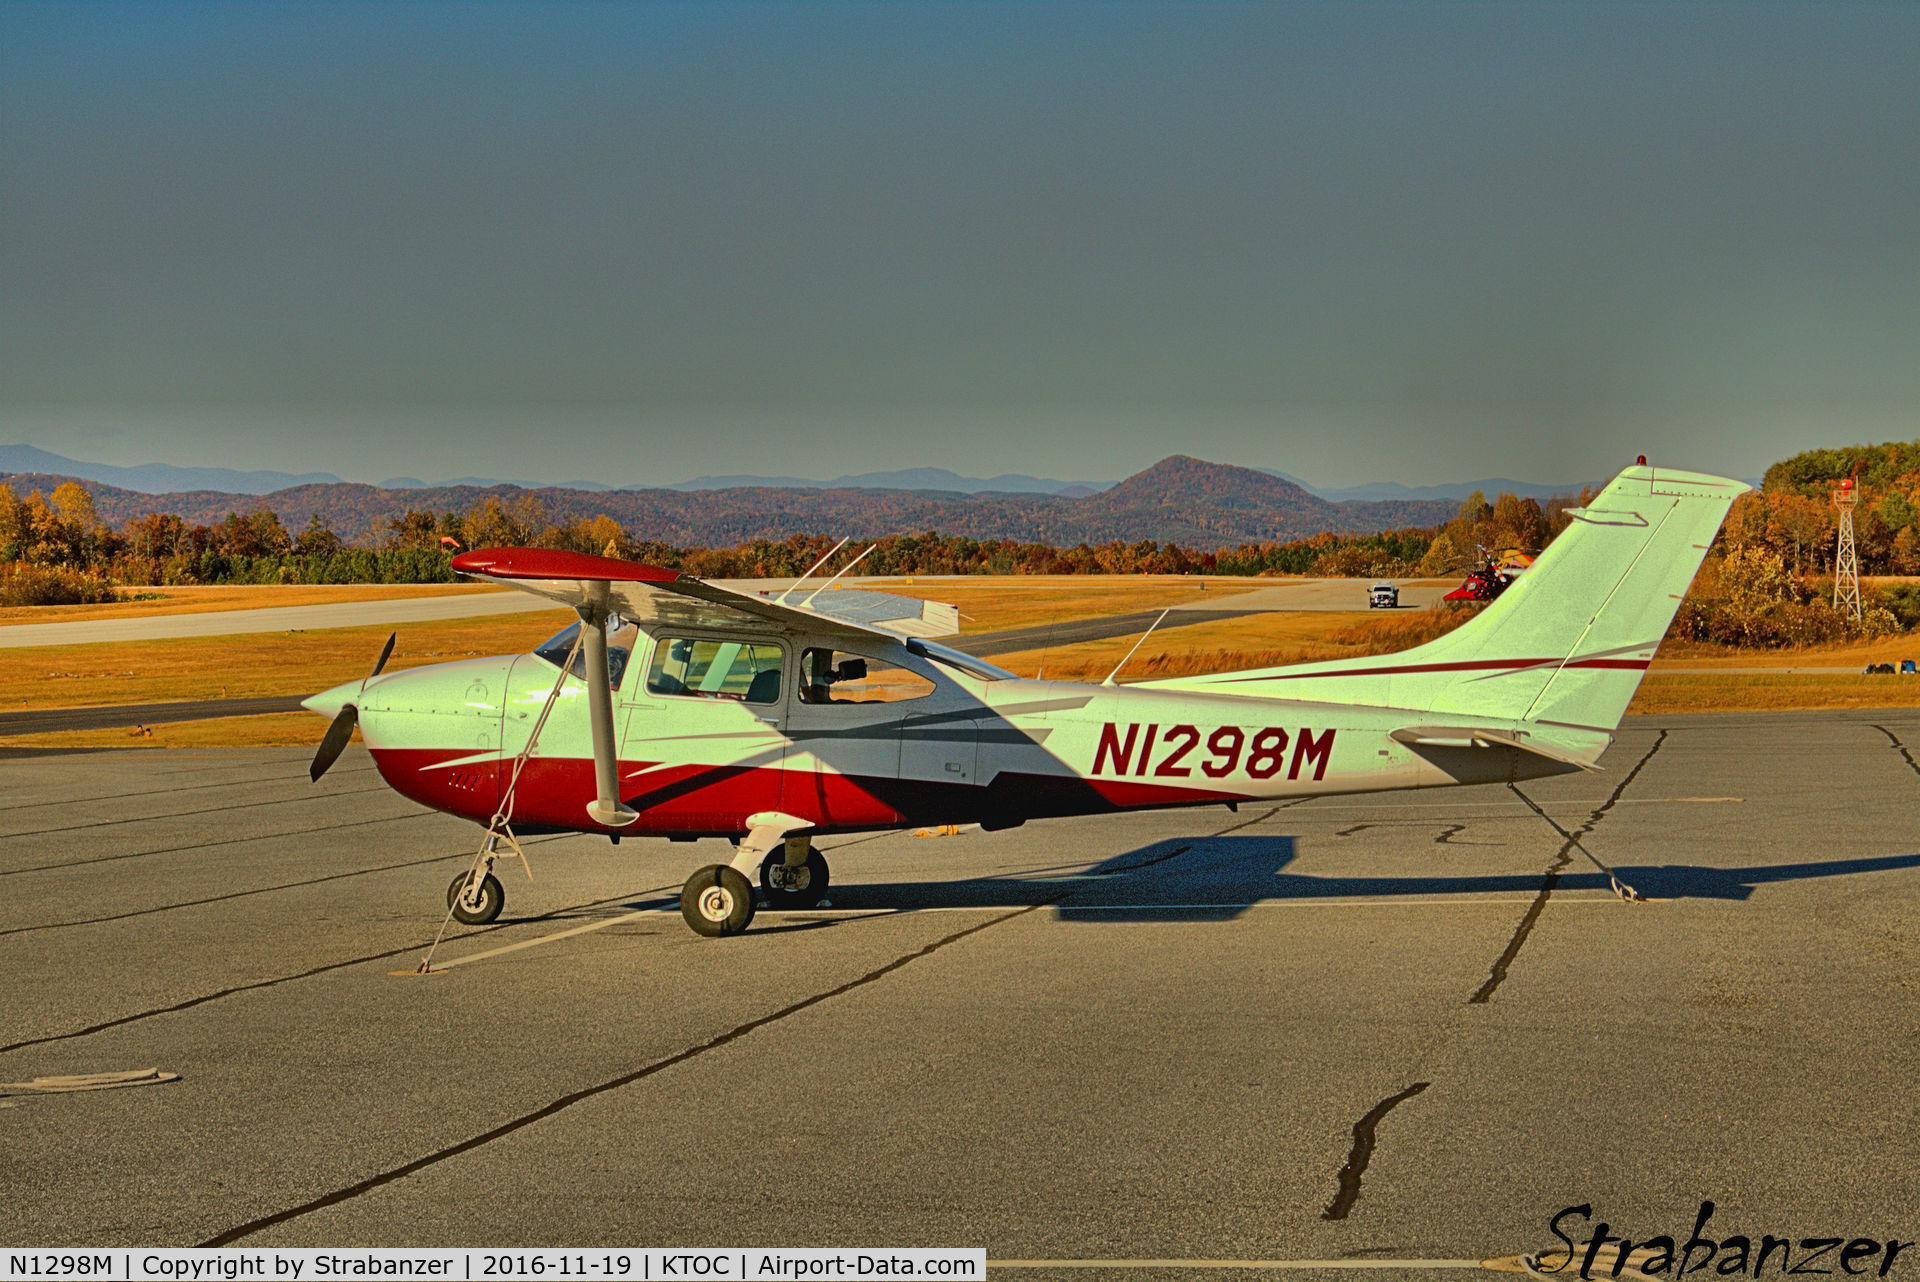 N1298M, 1975 Cessna 182P Skylane C/N 18264280, Basking in the afternoon sun